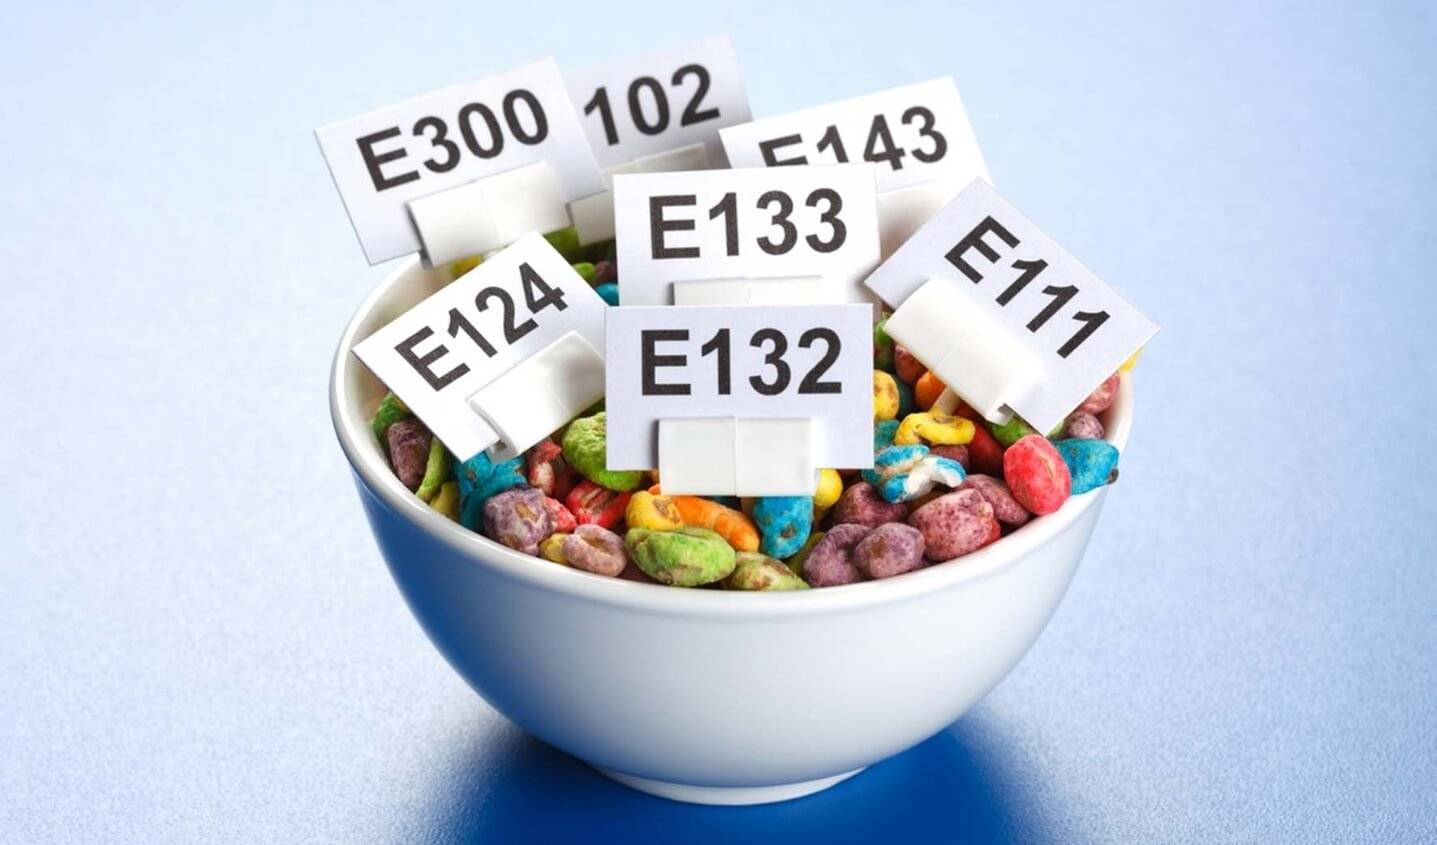 Осторожно, е-шки: 9 вредных пищевых добавок, которые лучше не употреблять